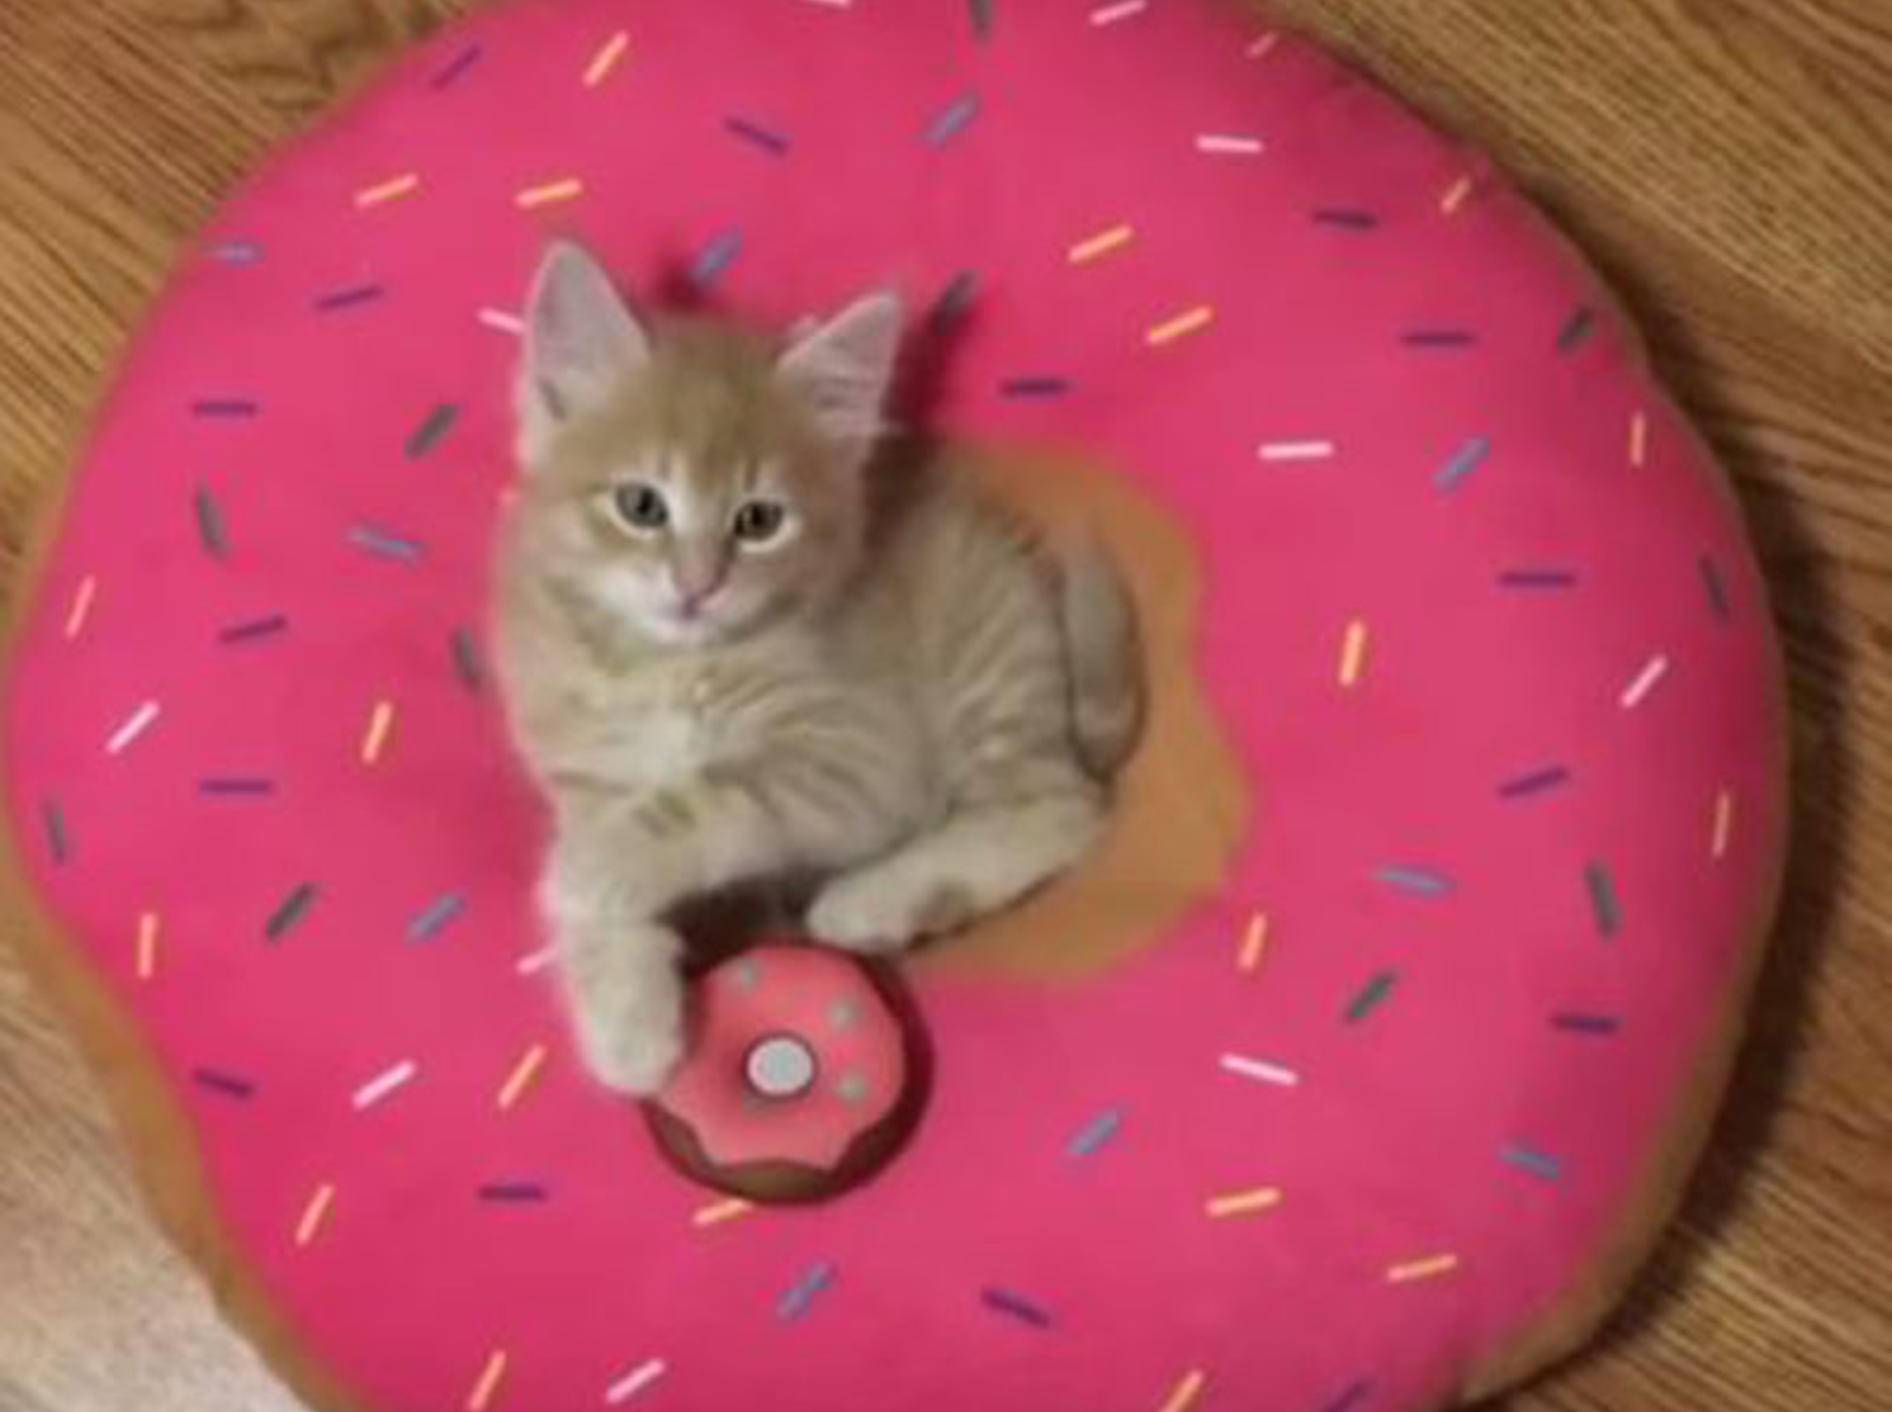 Babykatze Stanley macht es sich in seinem Donut-Kissen gemütlich - Bild: YouTube / Love Meow